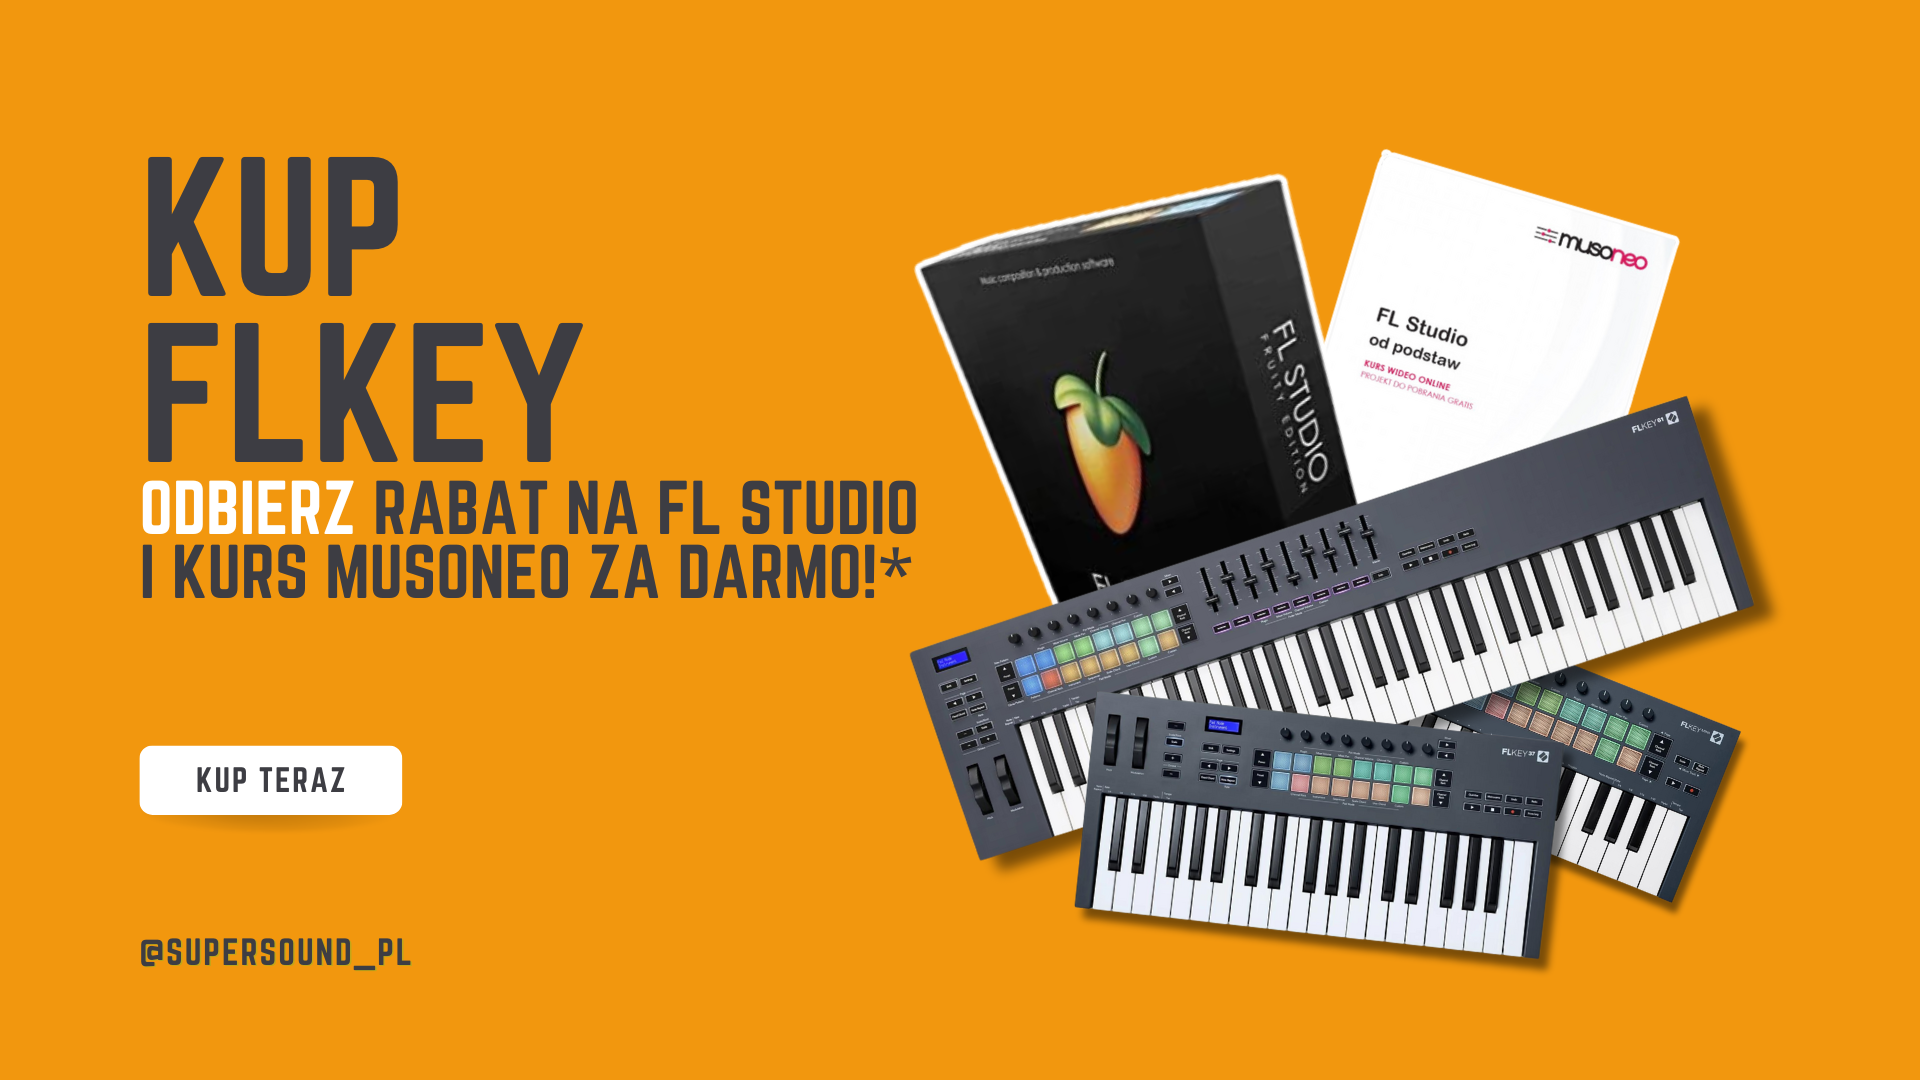 KUP FLKey i odbierz rabat na FL Studio oraz kurs Musoneo za darmo!